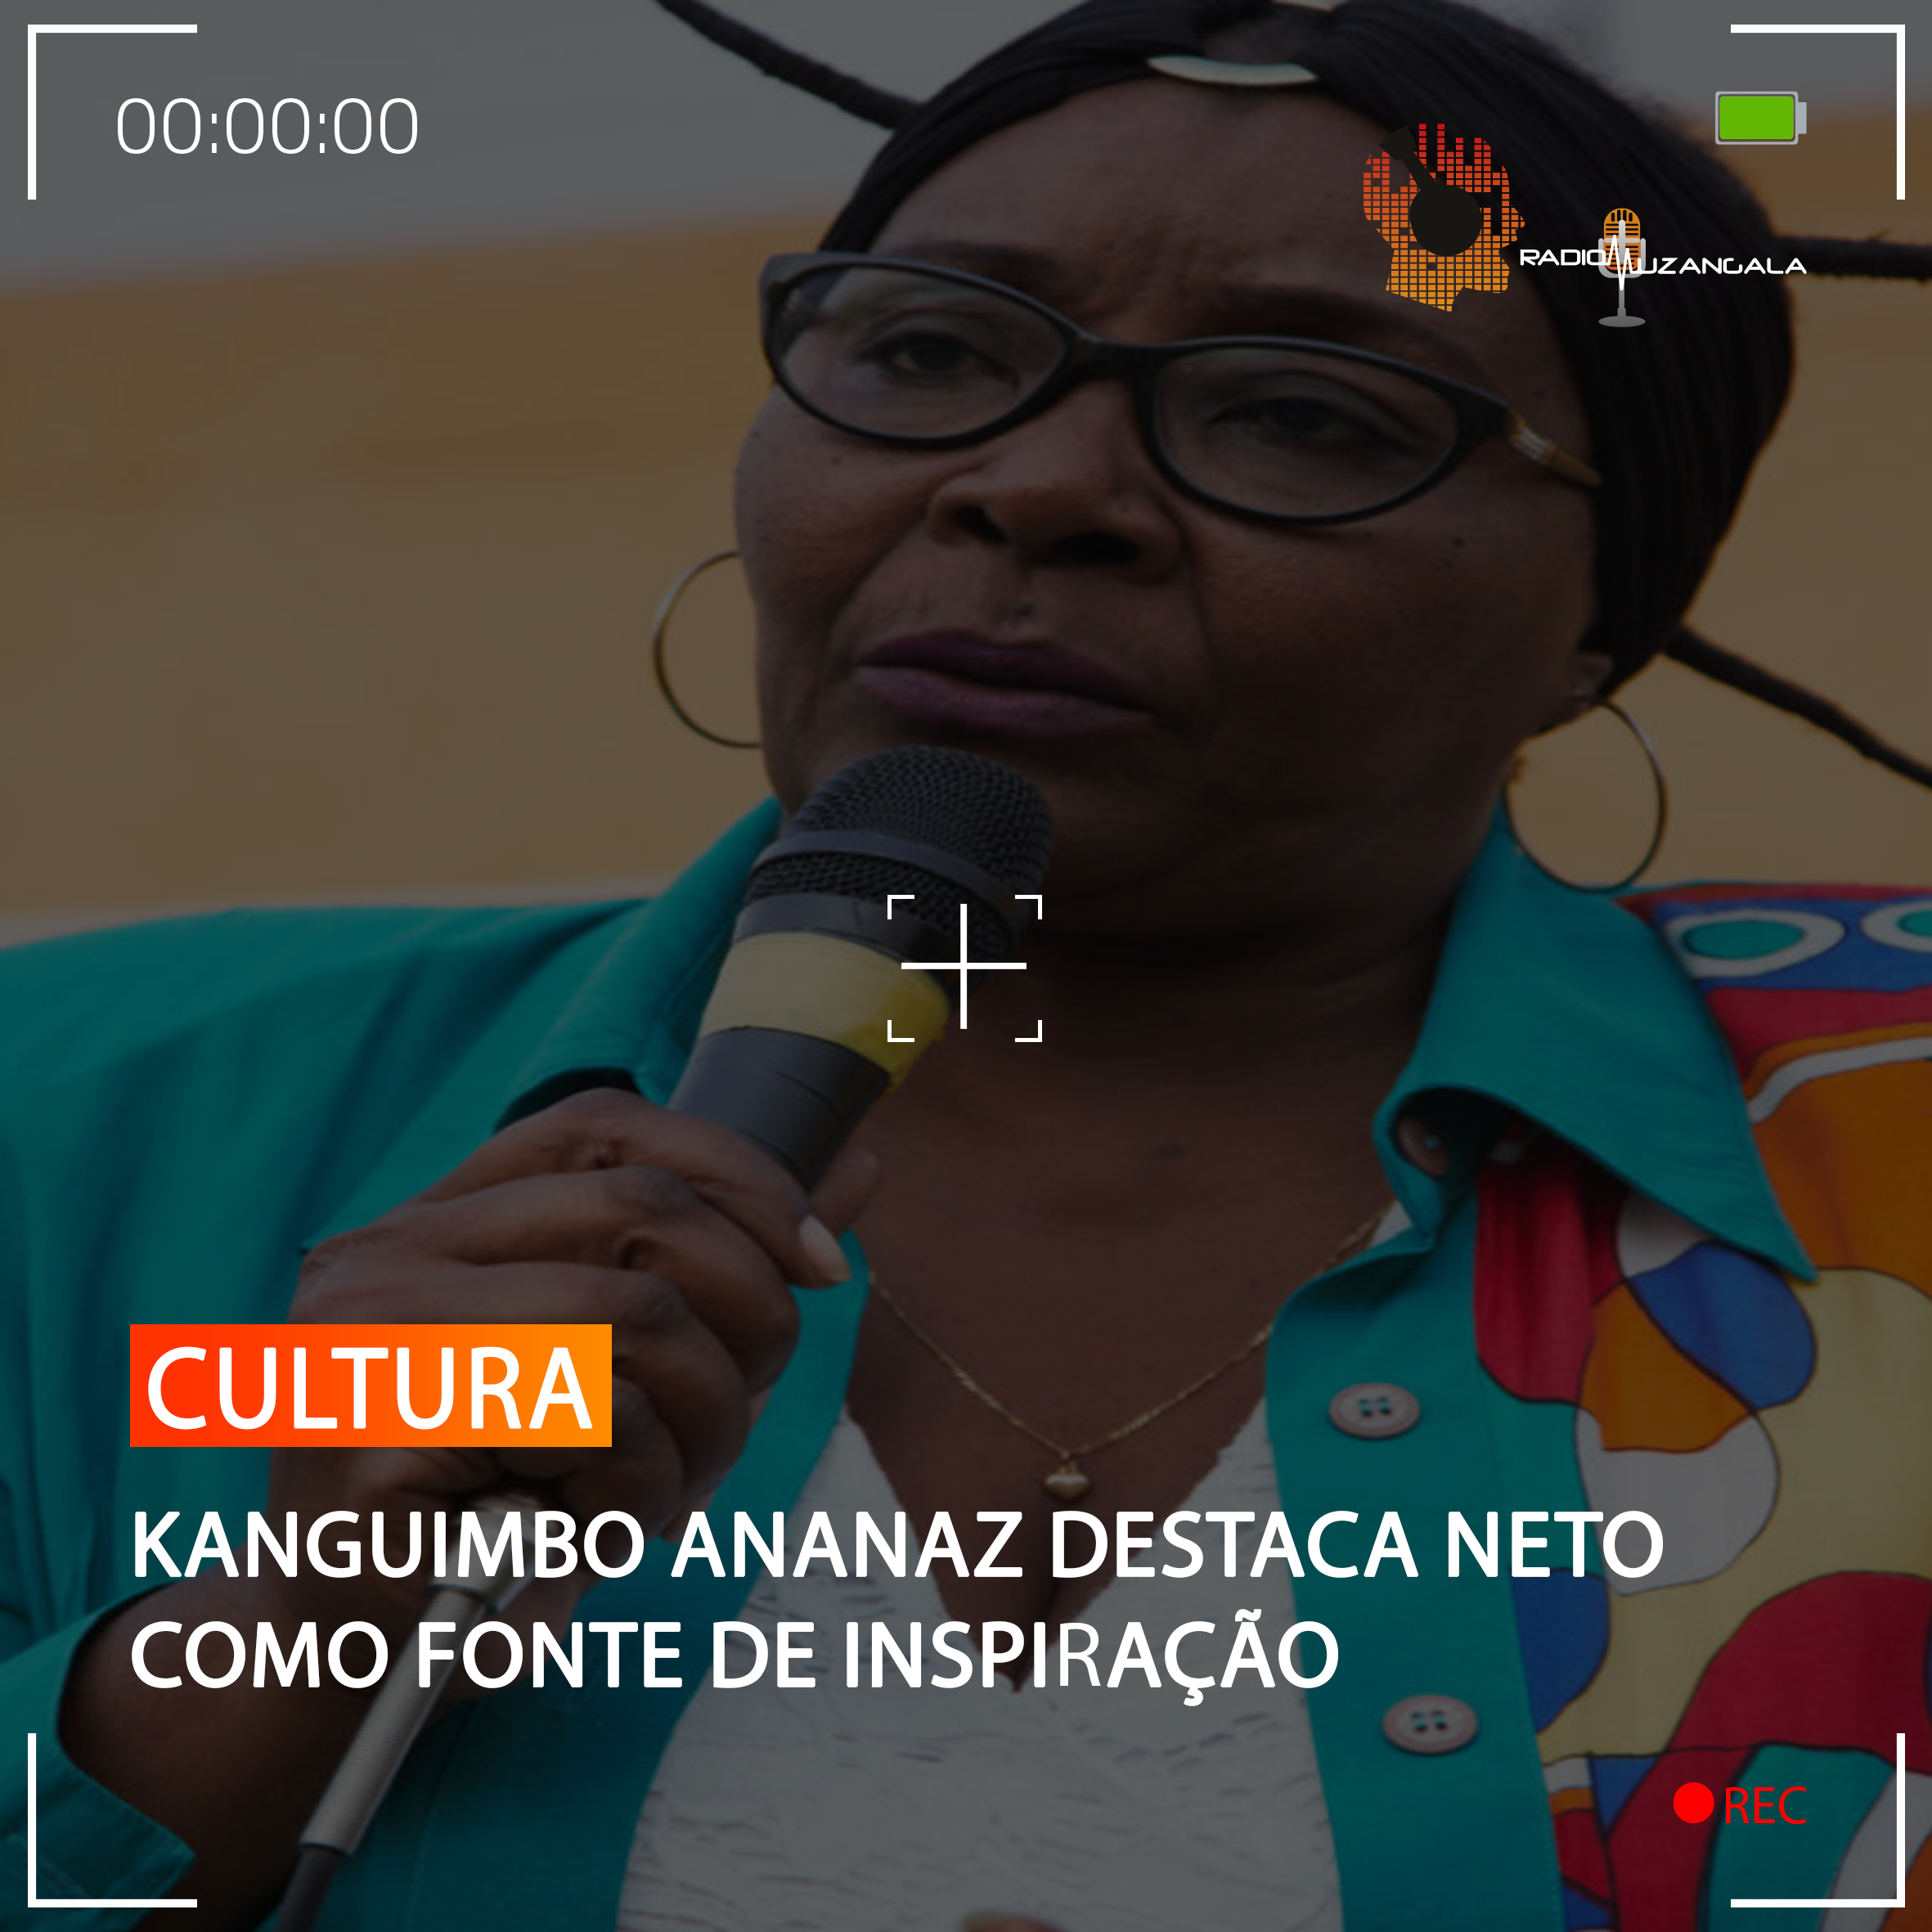  KANGUIMBO ANANAZ DESTACA NETO COMO FONTE DE INSPIRAÇÃO